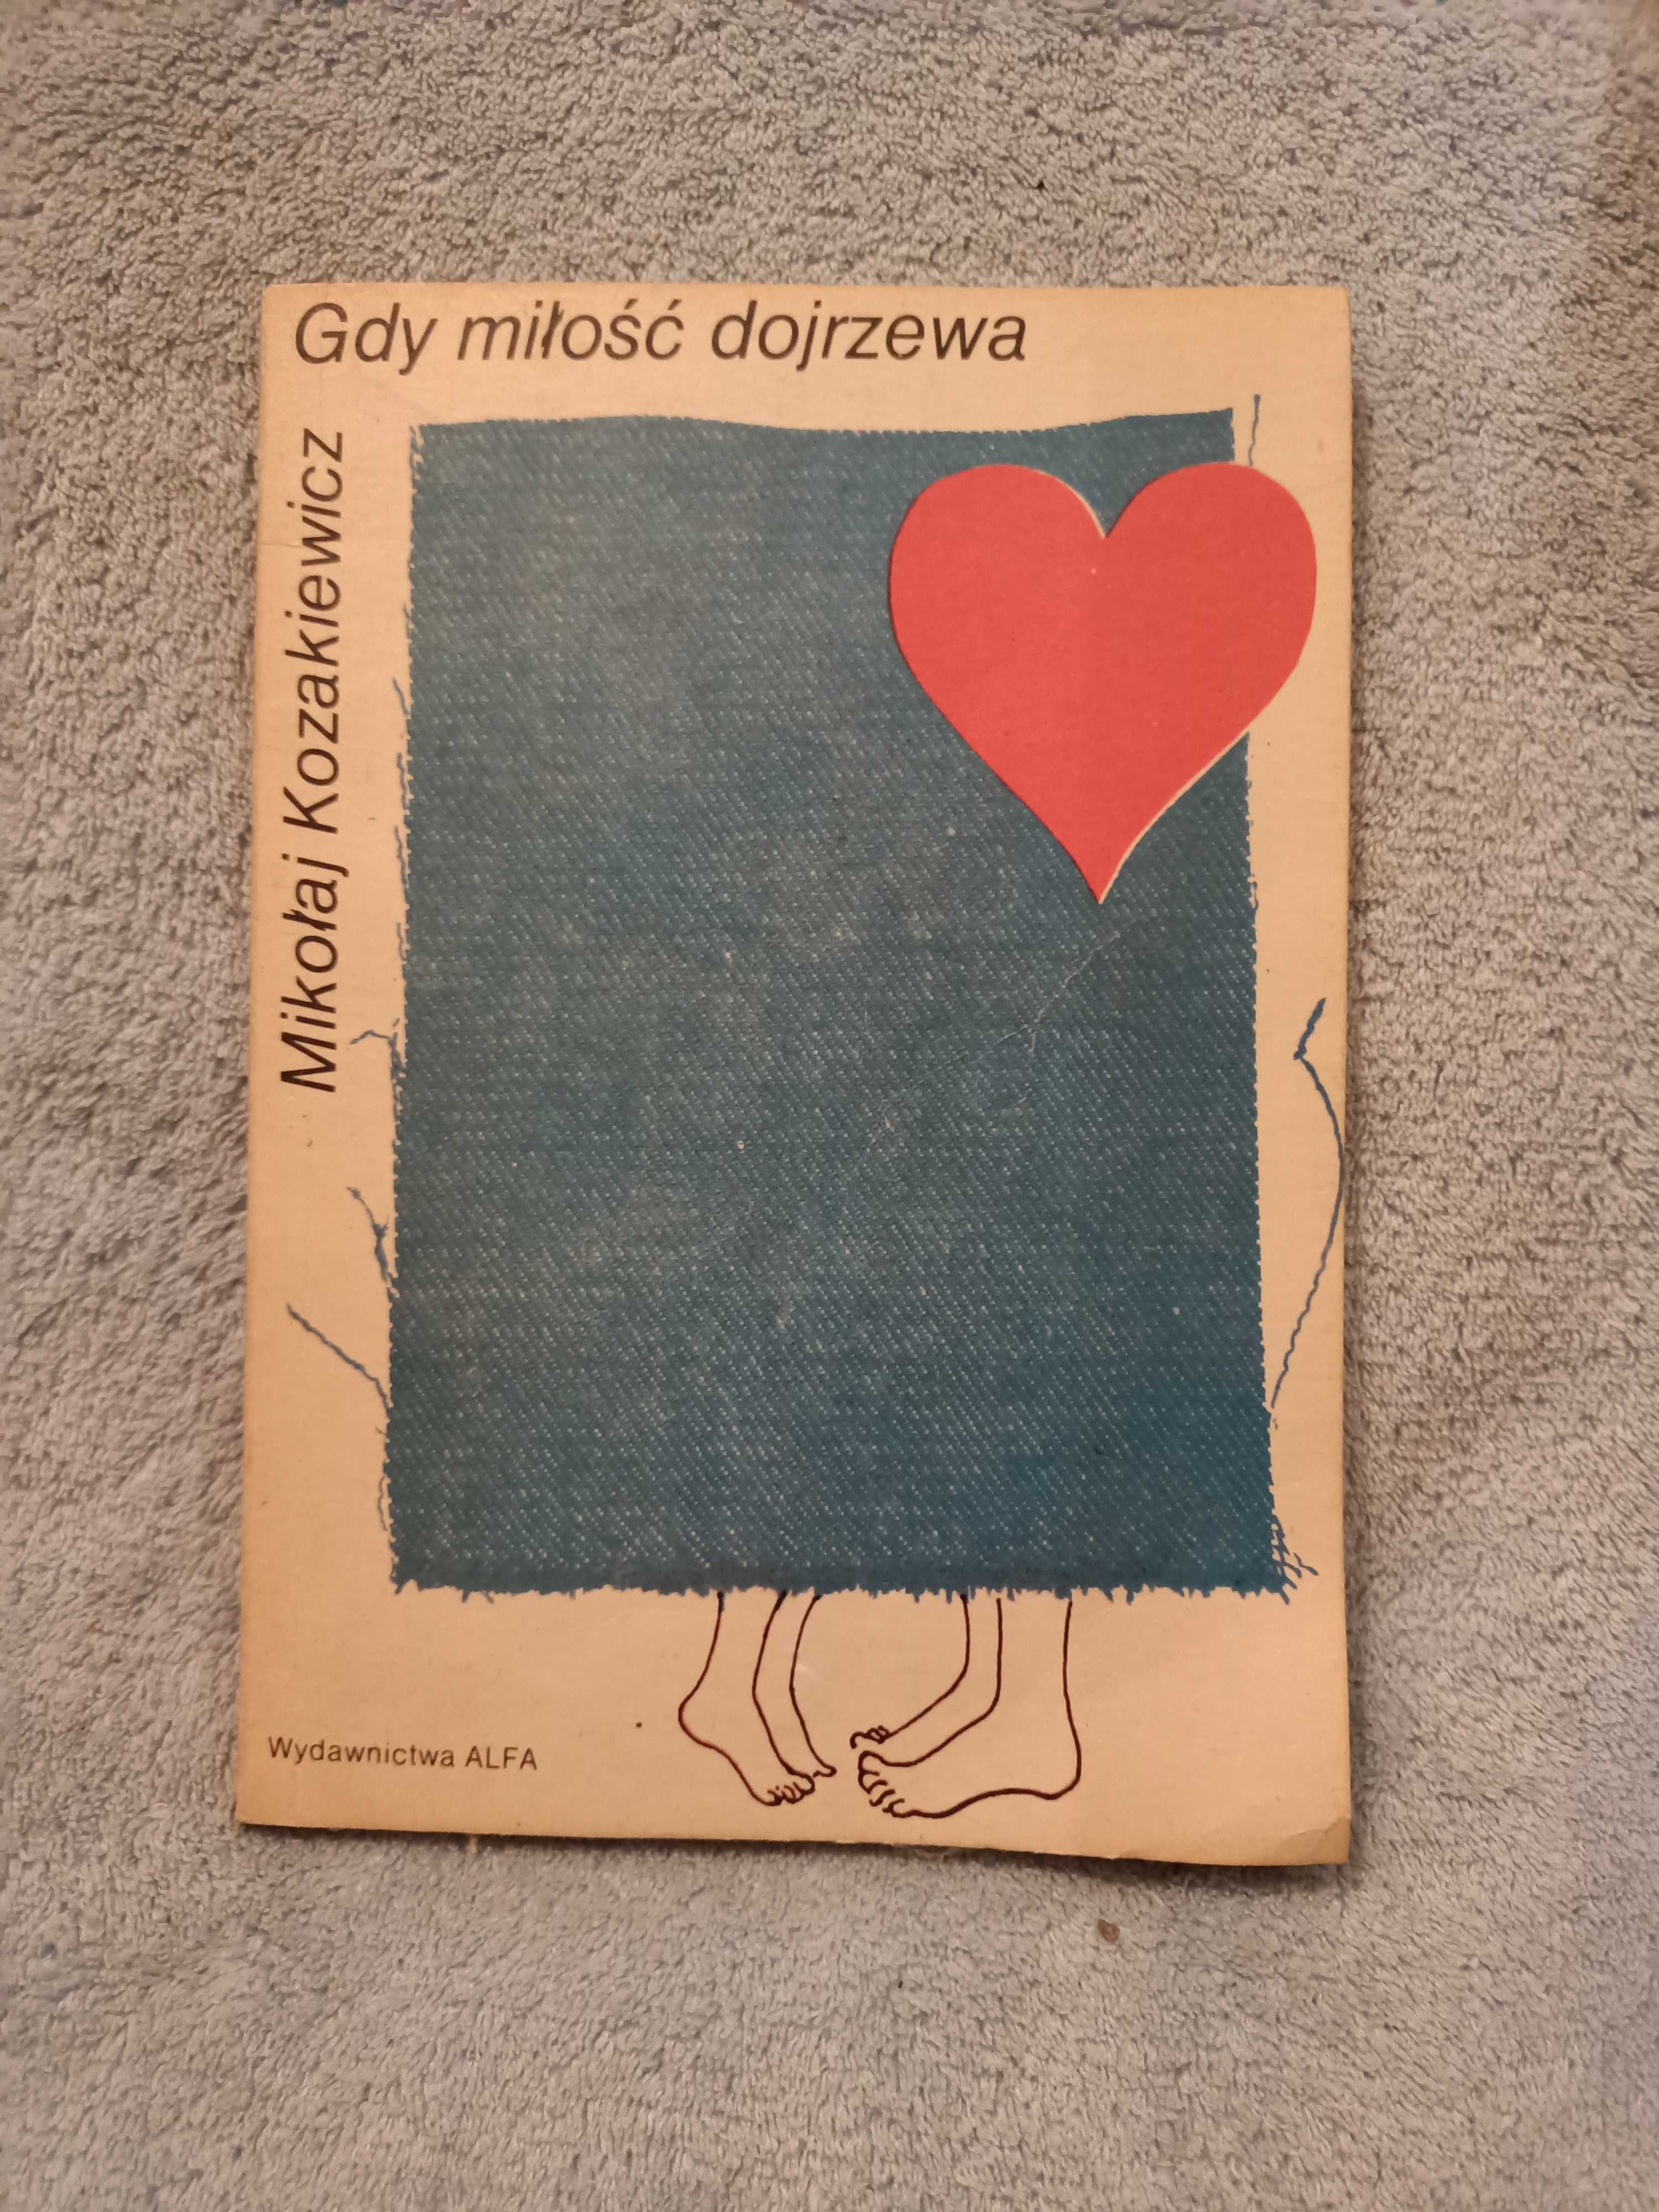 Kozakiewicz M. - Gdy miłość dojrzewa